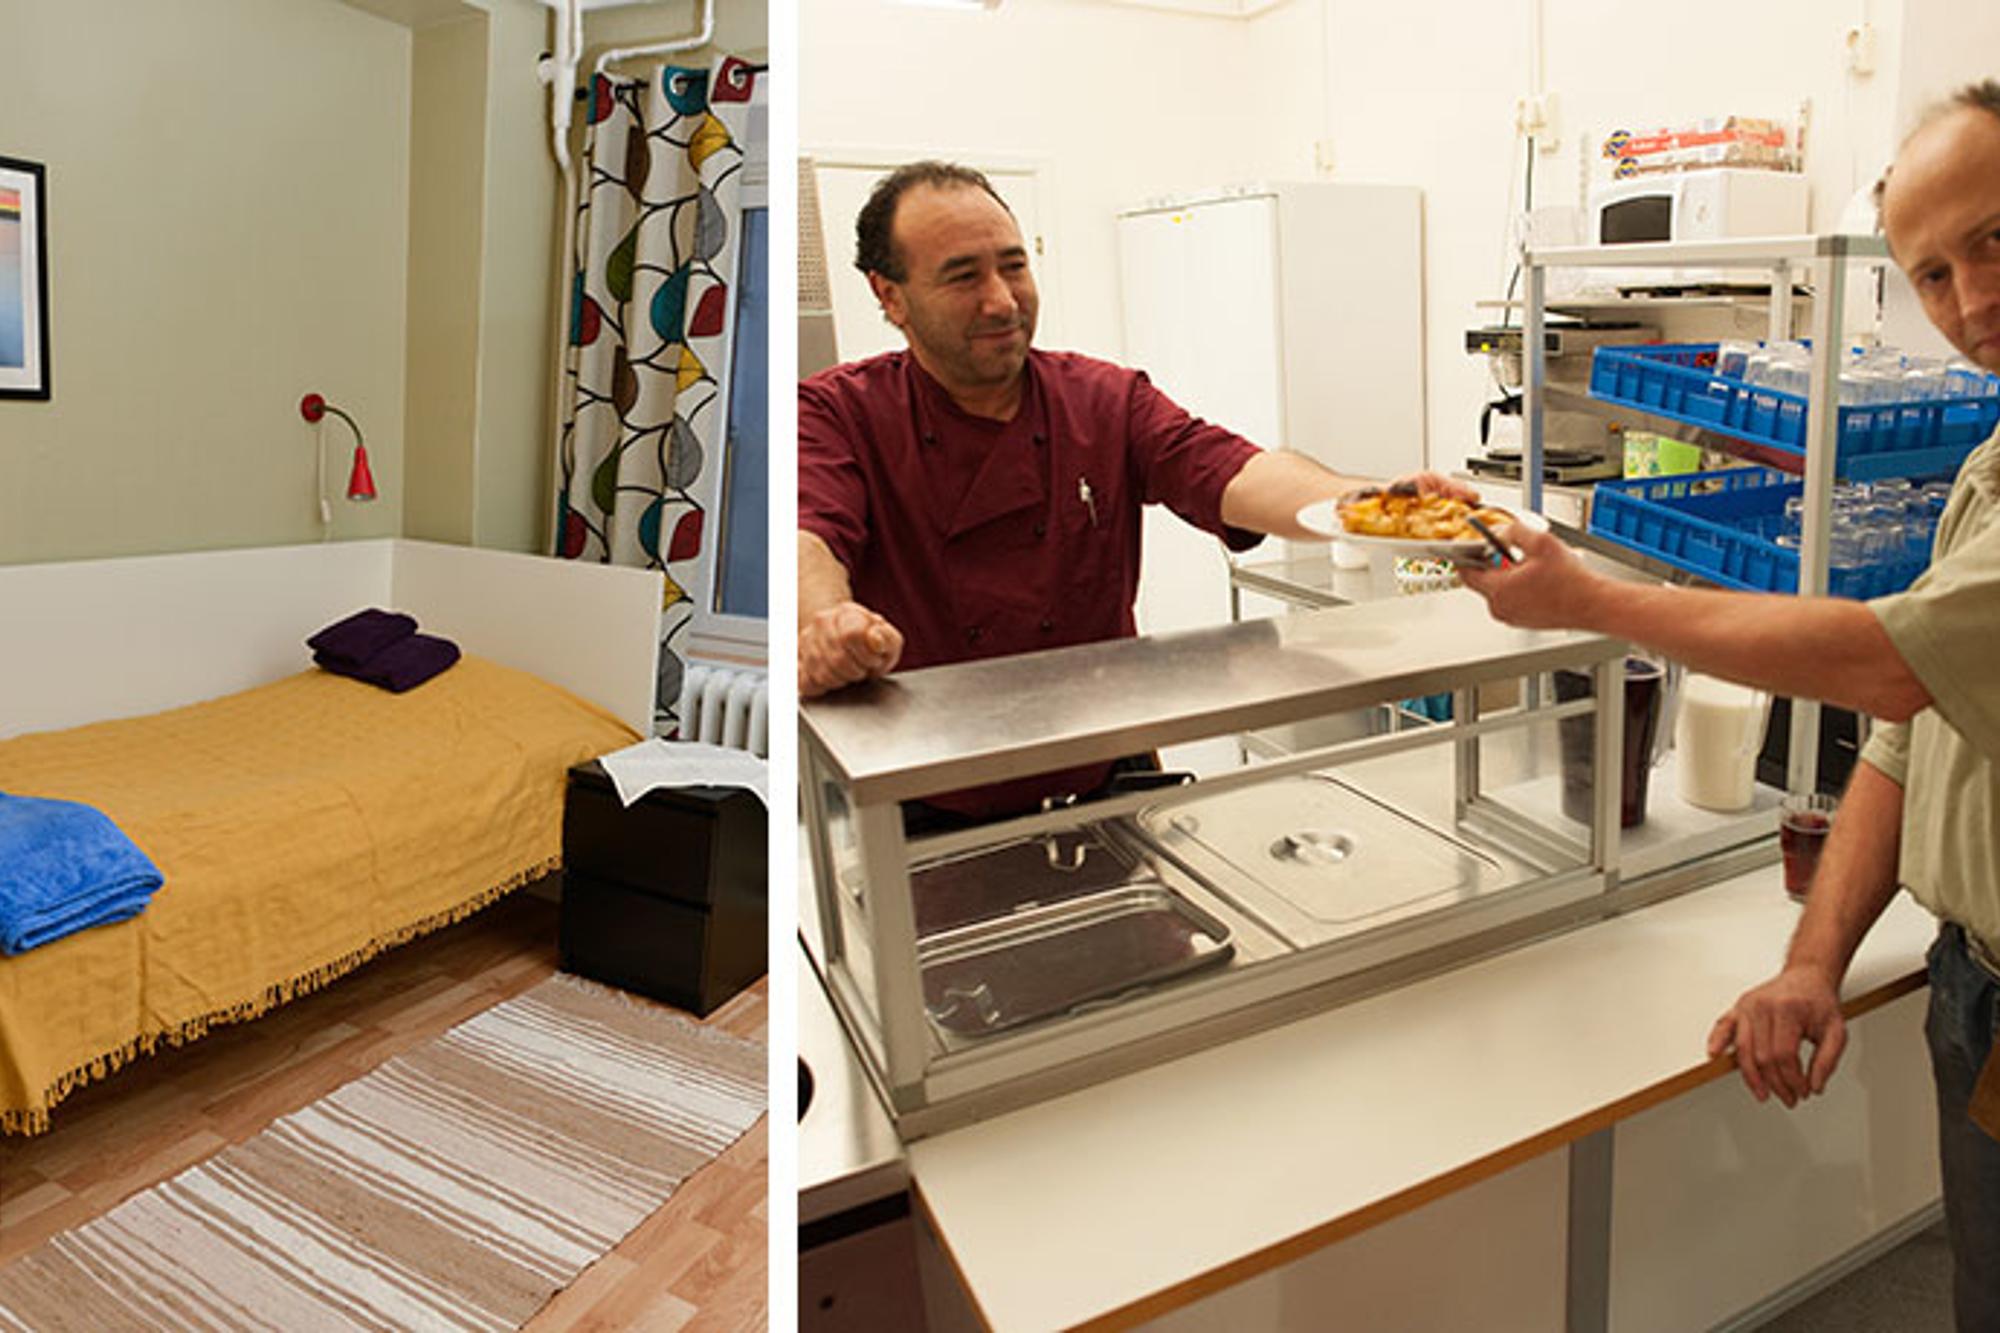 Till vänster: Ett rum med en säng. På väggen hänger det en tavla och på golvet ligger det en randig matta. Till höger: Personal på stödboendet Lilla Bommen i Göteborg som delar ut en tallrik med mat till en man.